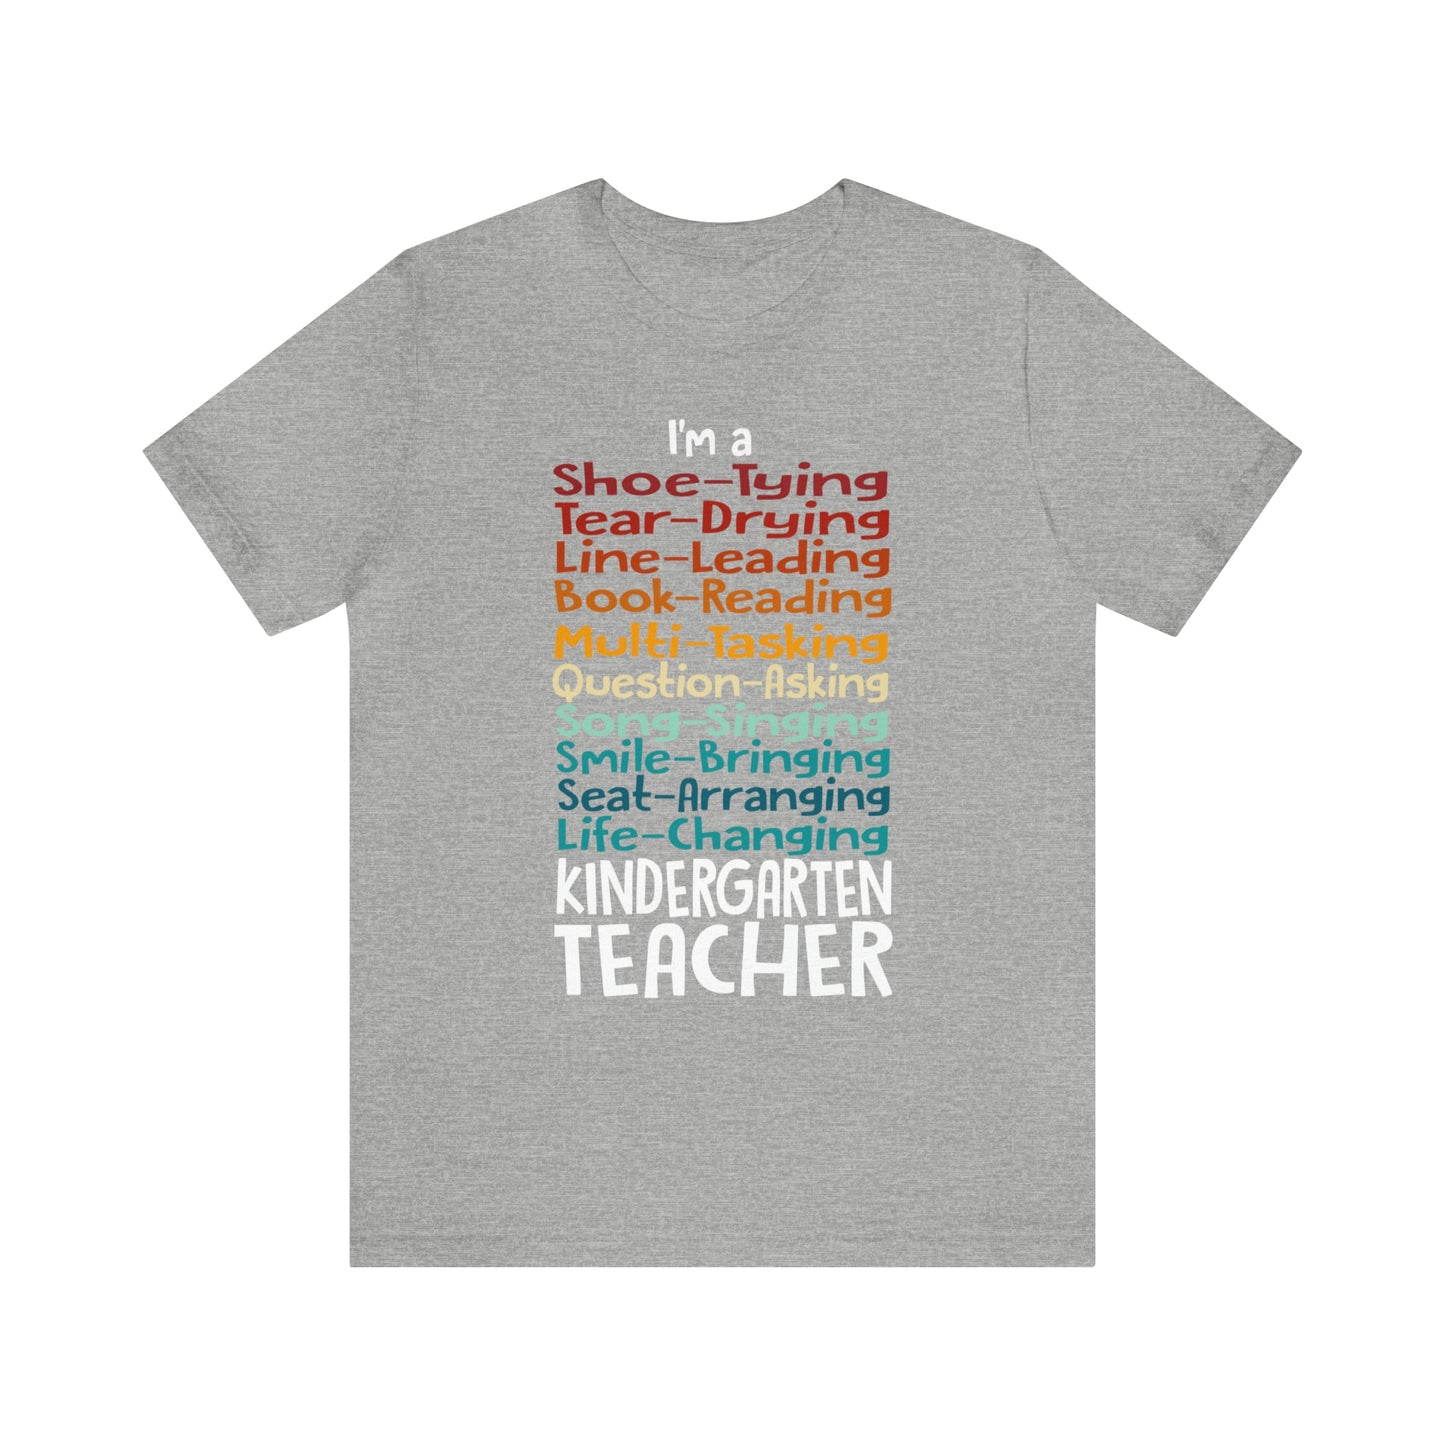 Life of a Kindergarten Teacher" In Color Tee!